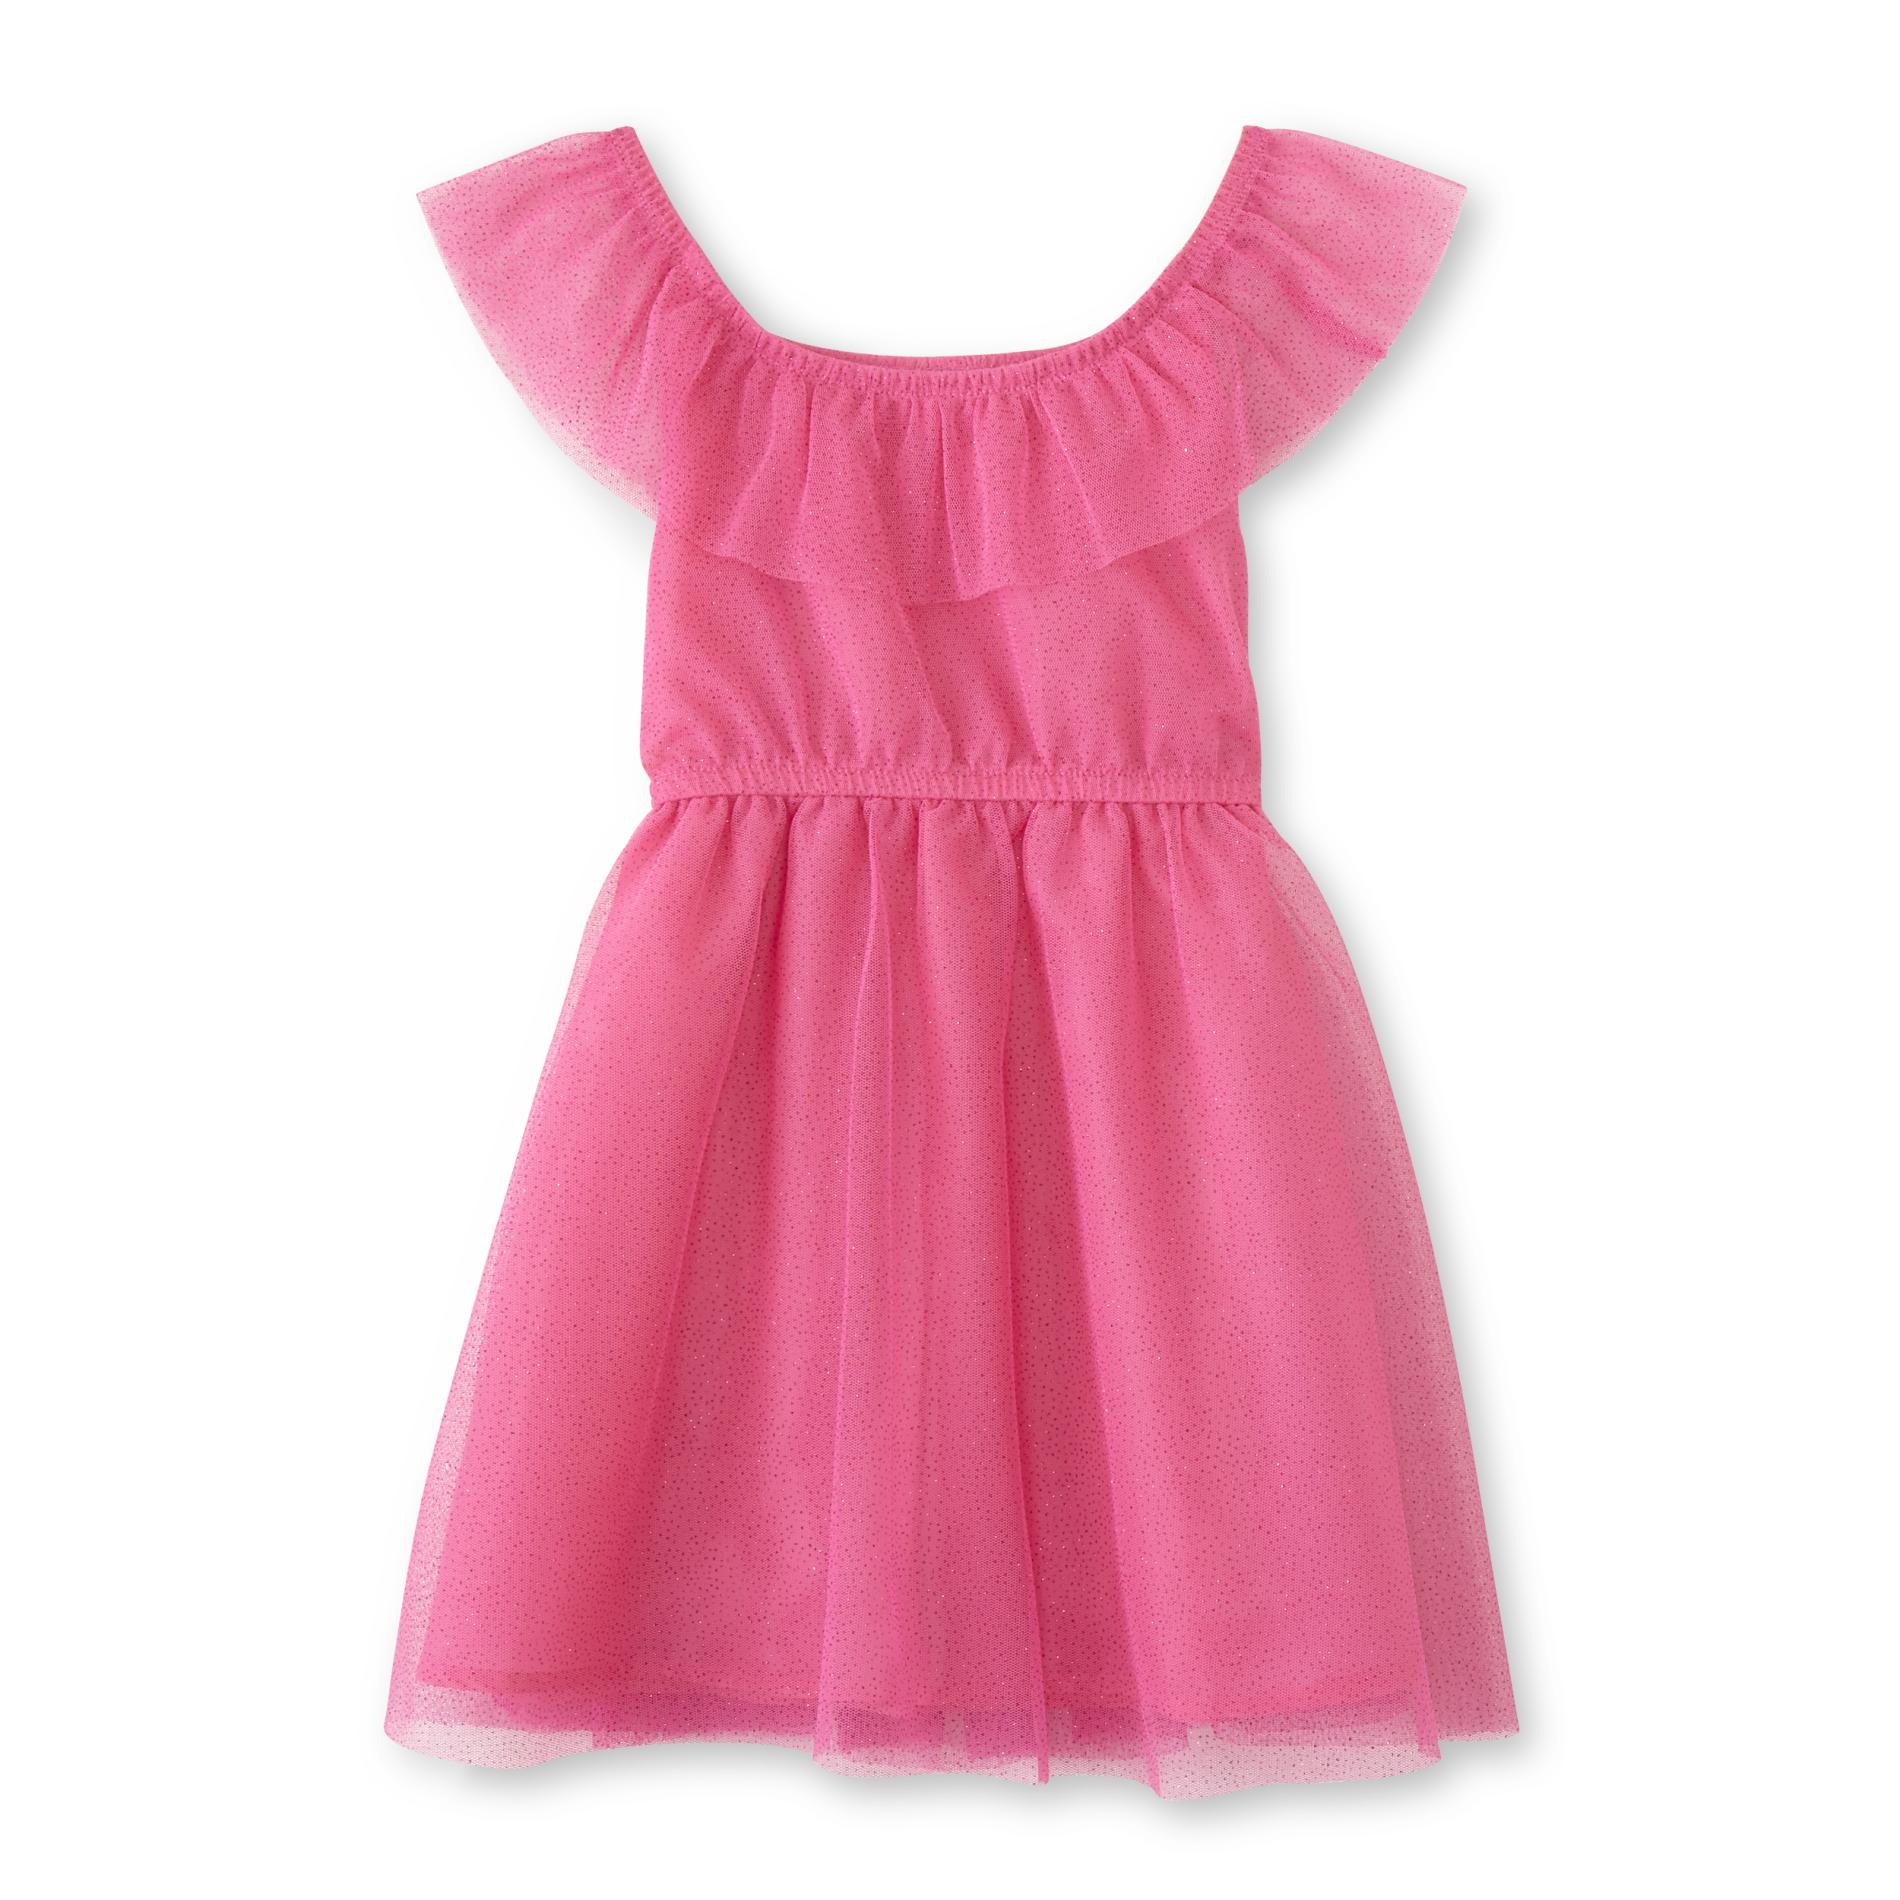 Toughskins Infant & Toddler Girls' Tulle Dress